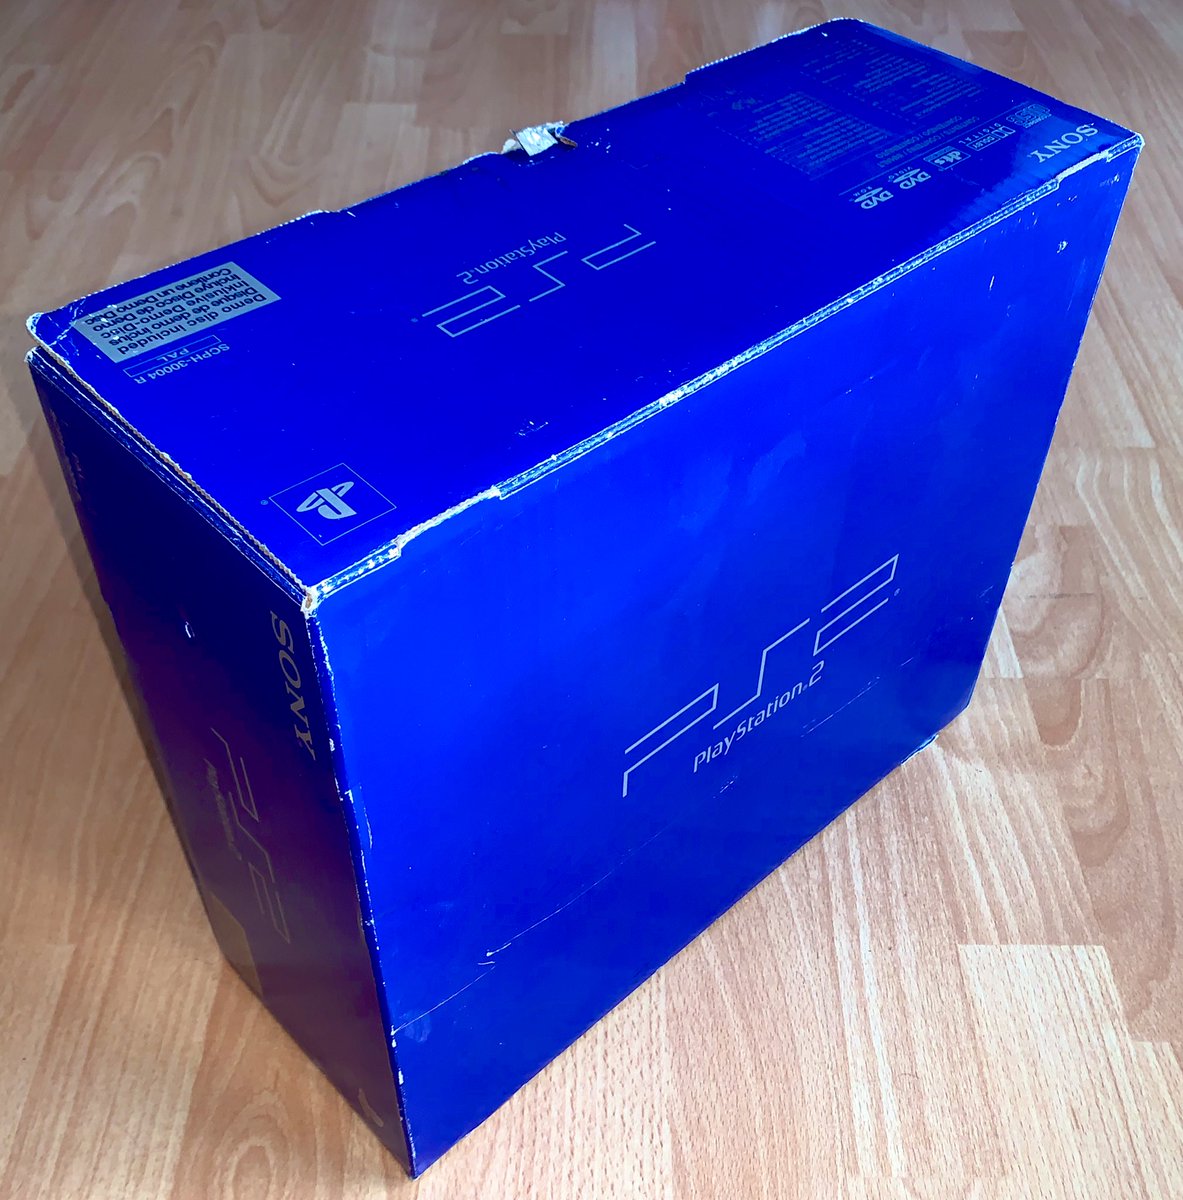 Sony PlayStation 2 (2000) La PS2 fat historique, noire dans sa boîte bleue ! Ce n’est pas la première série mais presque : celle-ci, ultra complète, est de 2001 et se porte toujours comme un charme. À noter que le mini-DVD média est toujours scellé et n’a jamais été utilisé…